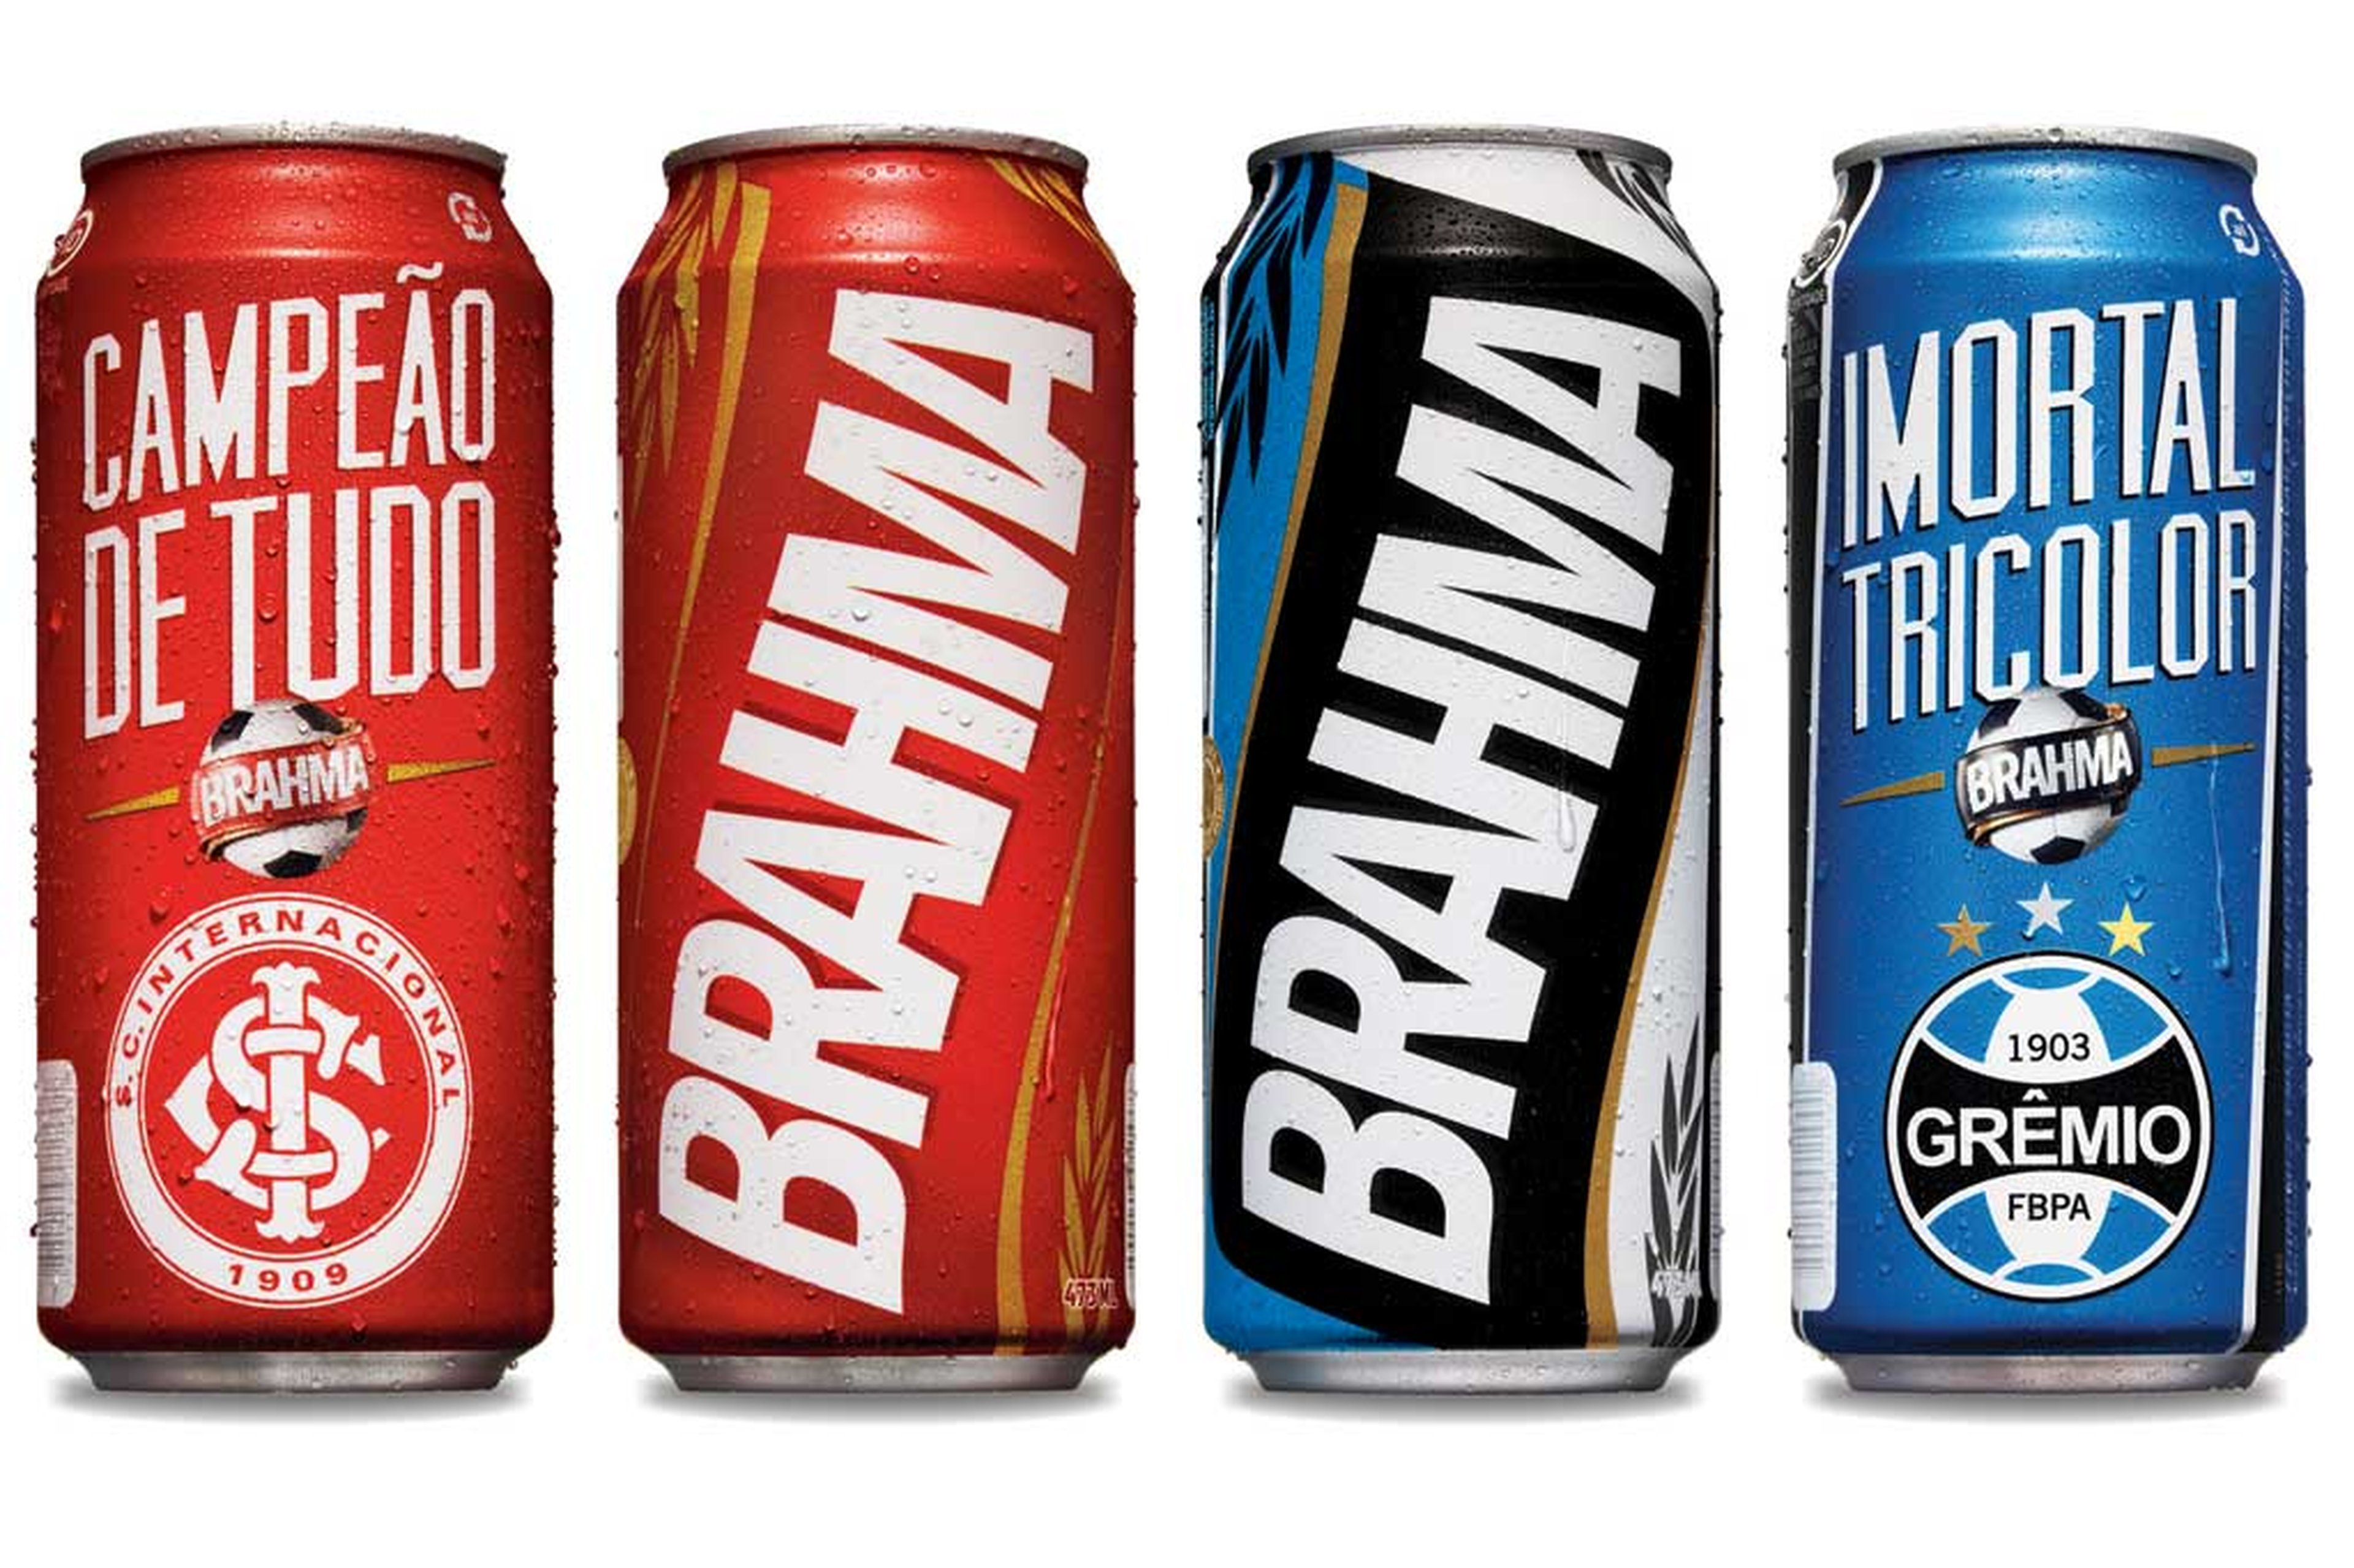 Brahma/Divulgação